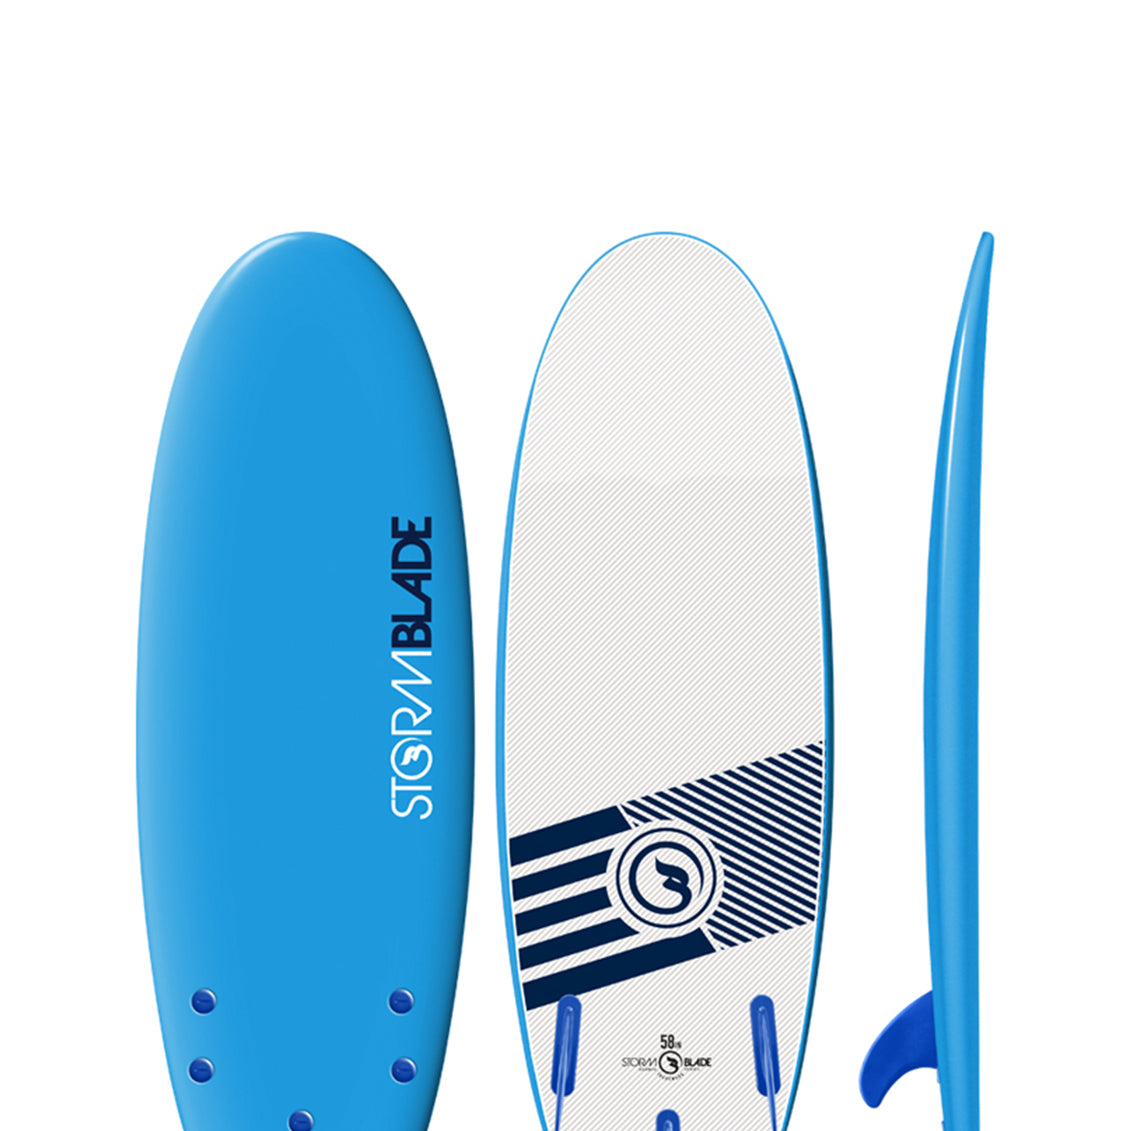 Storm Blade Mini Surfboard Azure Blue 58in